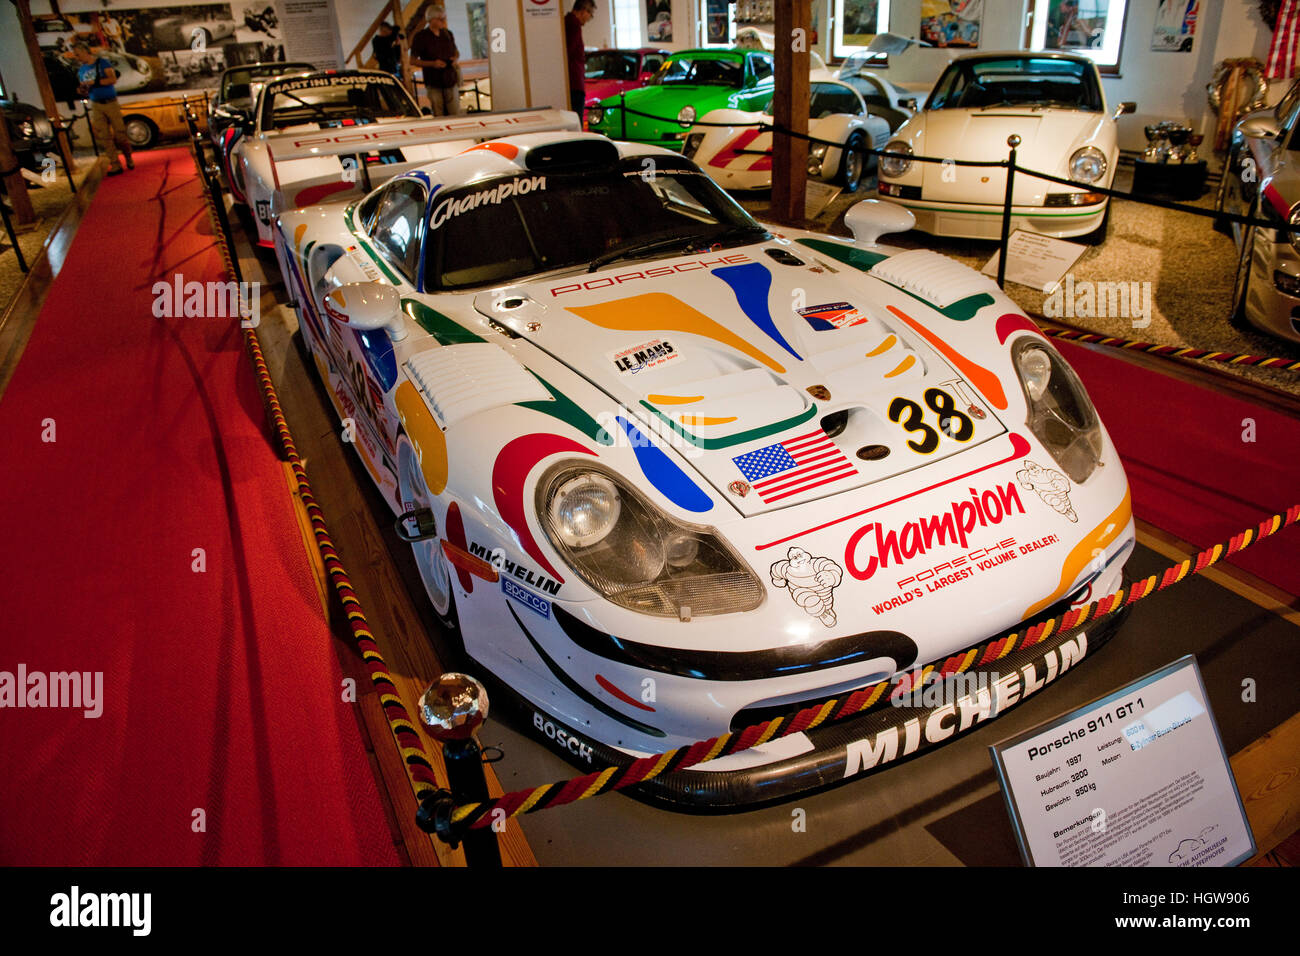 Porsche 911 GT1, de l'année de construction, année de construction 1997, 600 hp, Automuseum Porsche Pfeifhofer, Gmuend, Hessen, Allemagne, Europe, Gmünd Banque D'Images